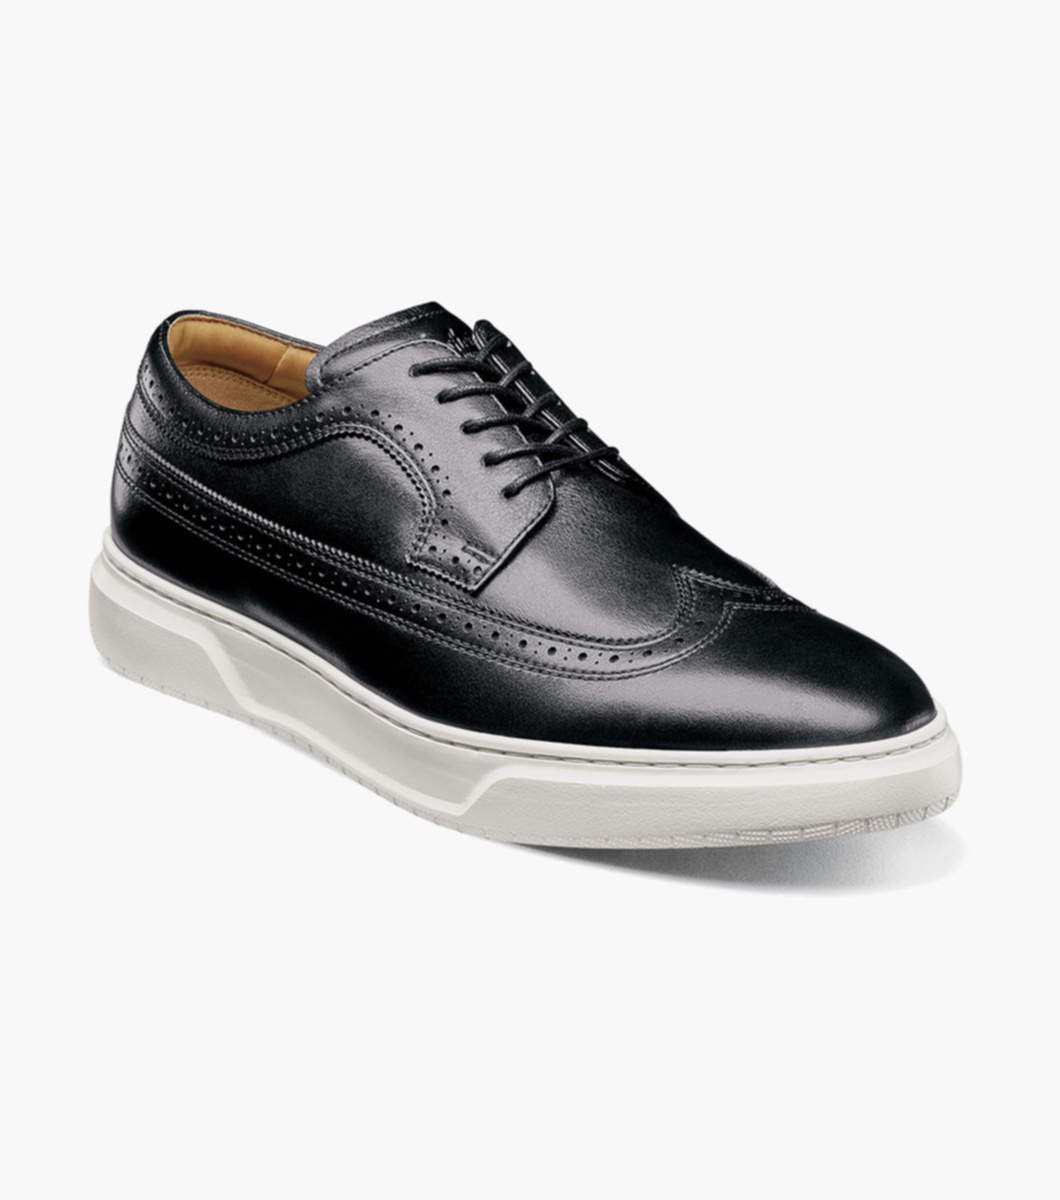 Battori Classic Men Shoes Shoes Mens Shoes Sneakers & Athletic Shoes Tie Sneakers 